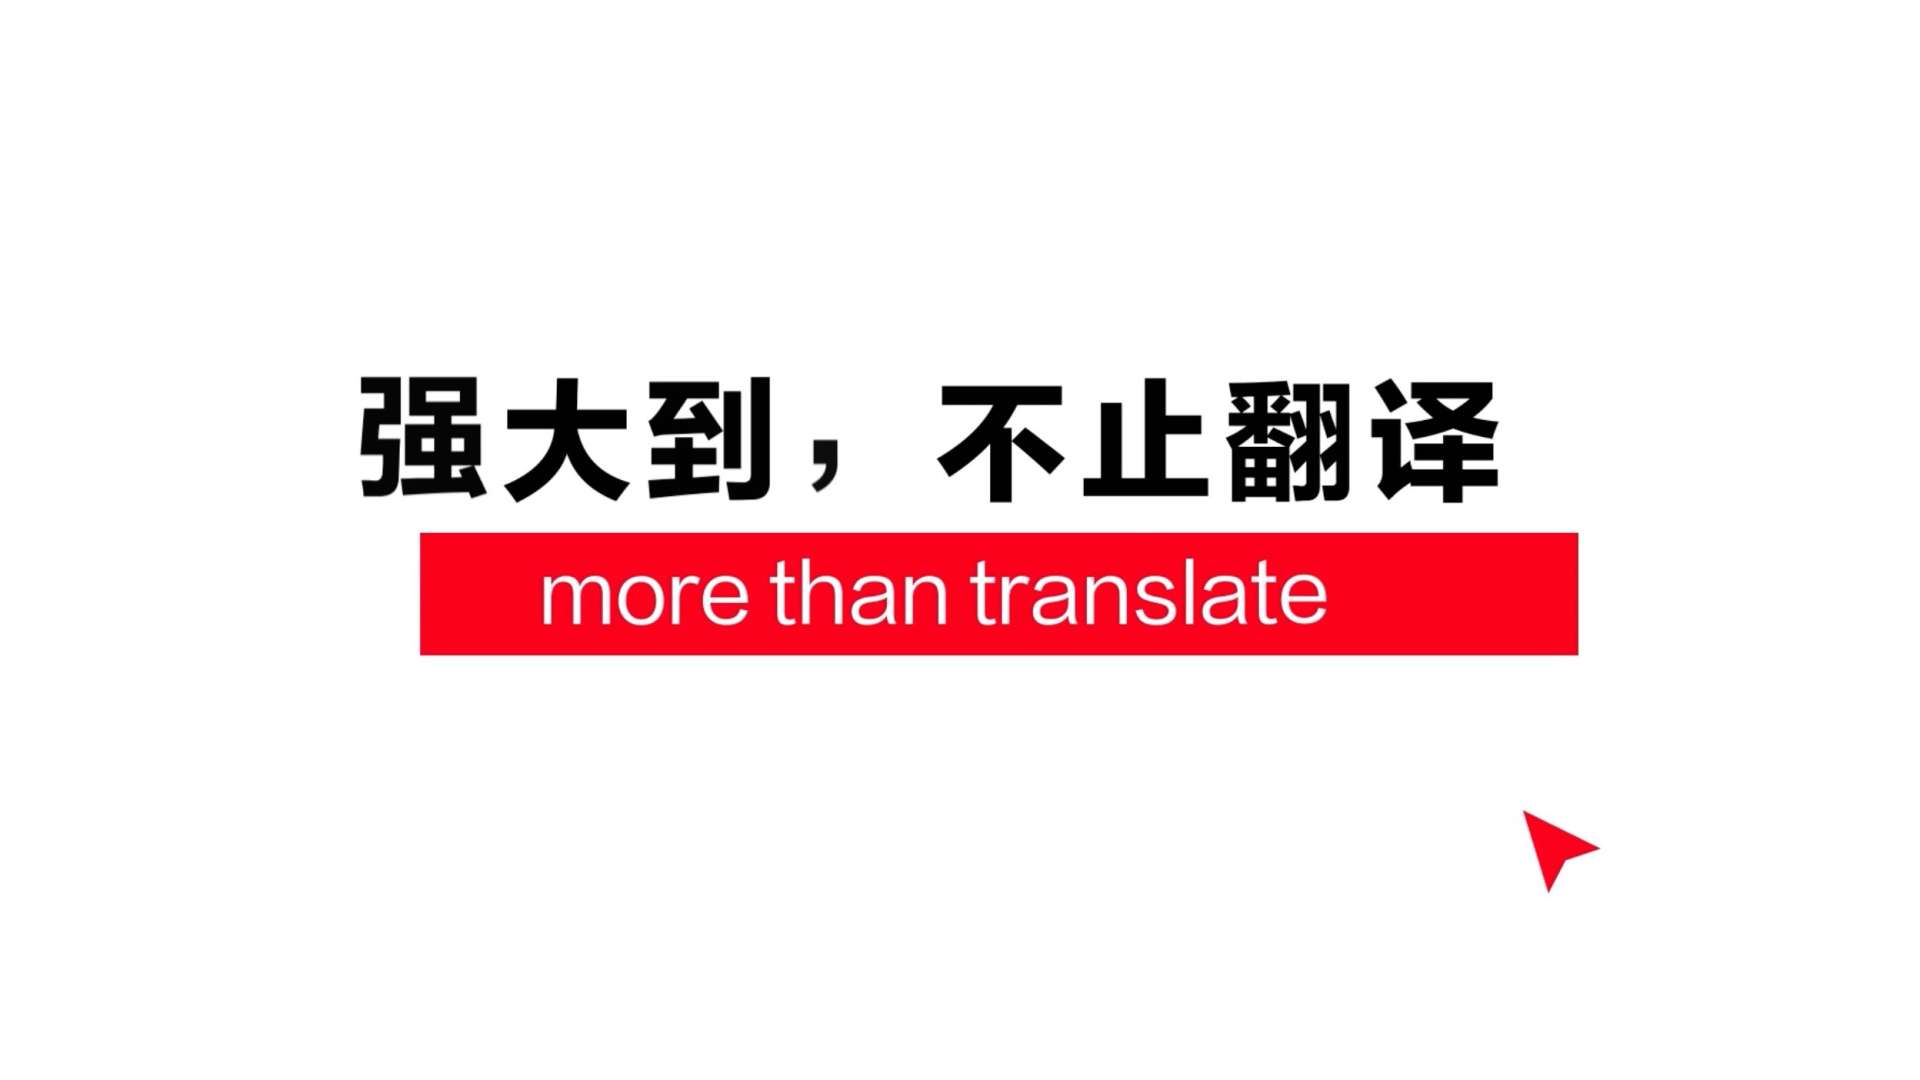 史上“最强大”的翻译软件 | 有道翻译 | 红与绿